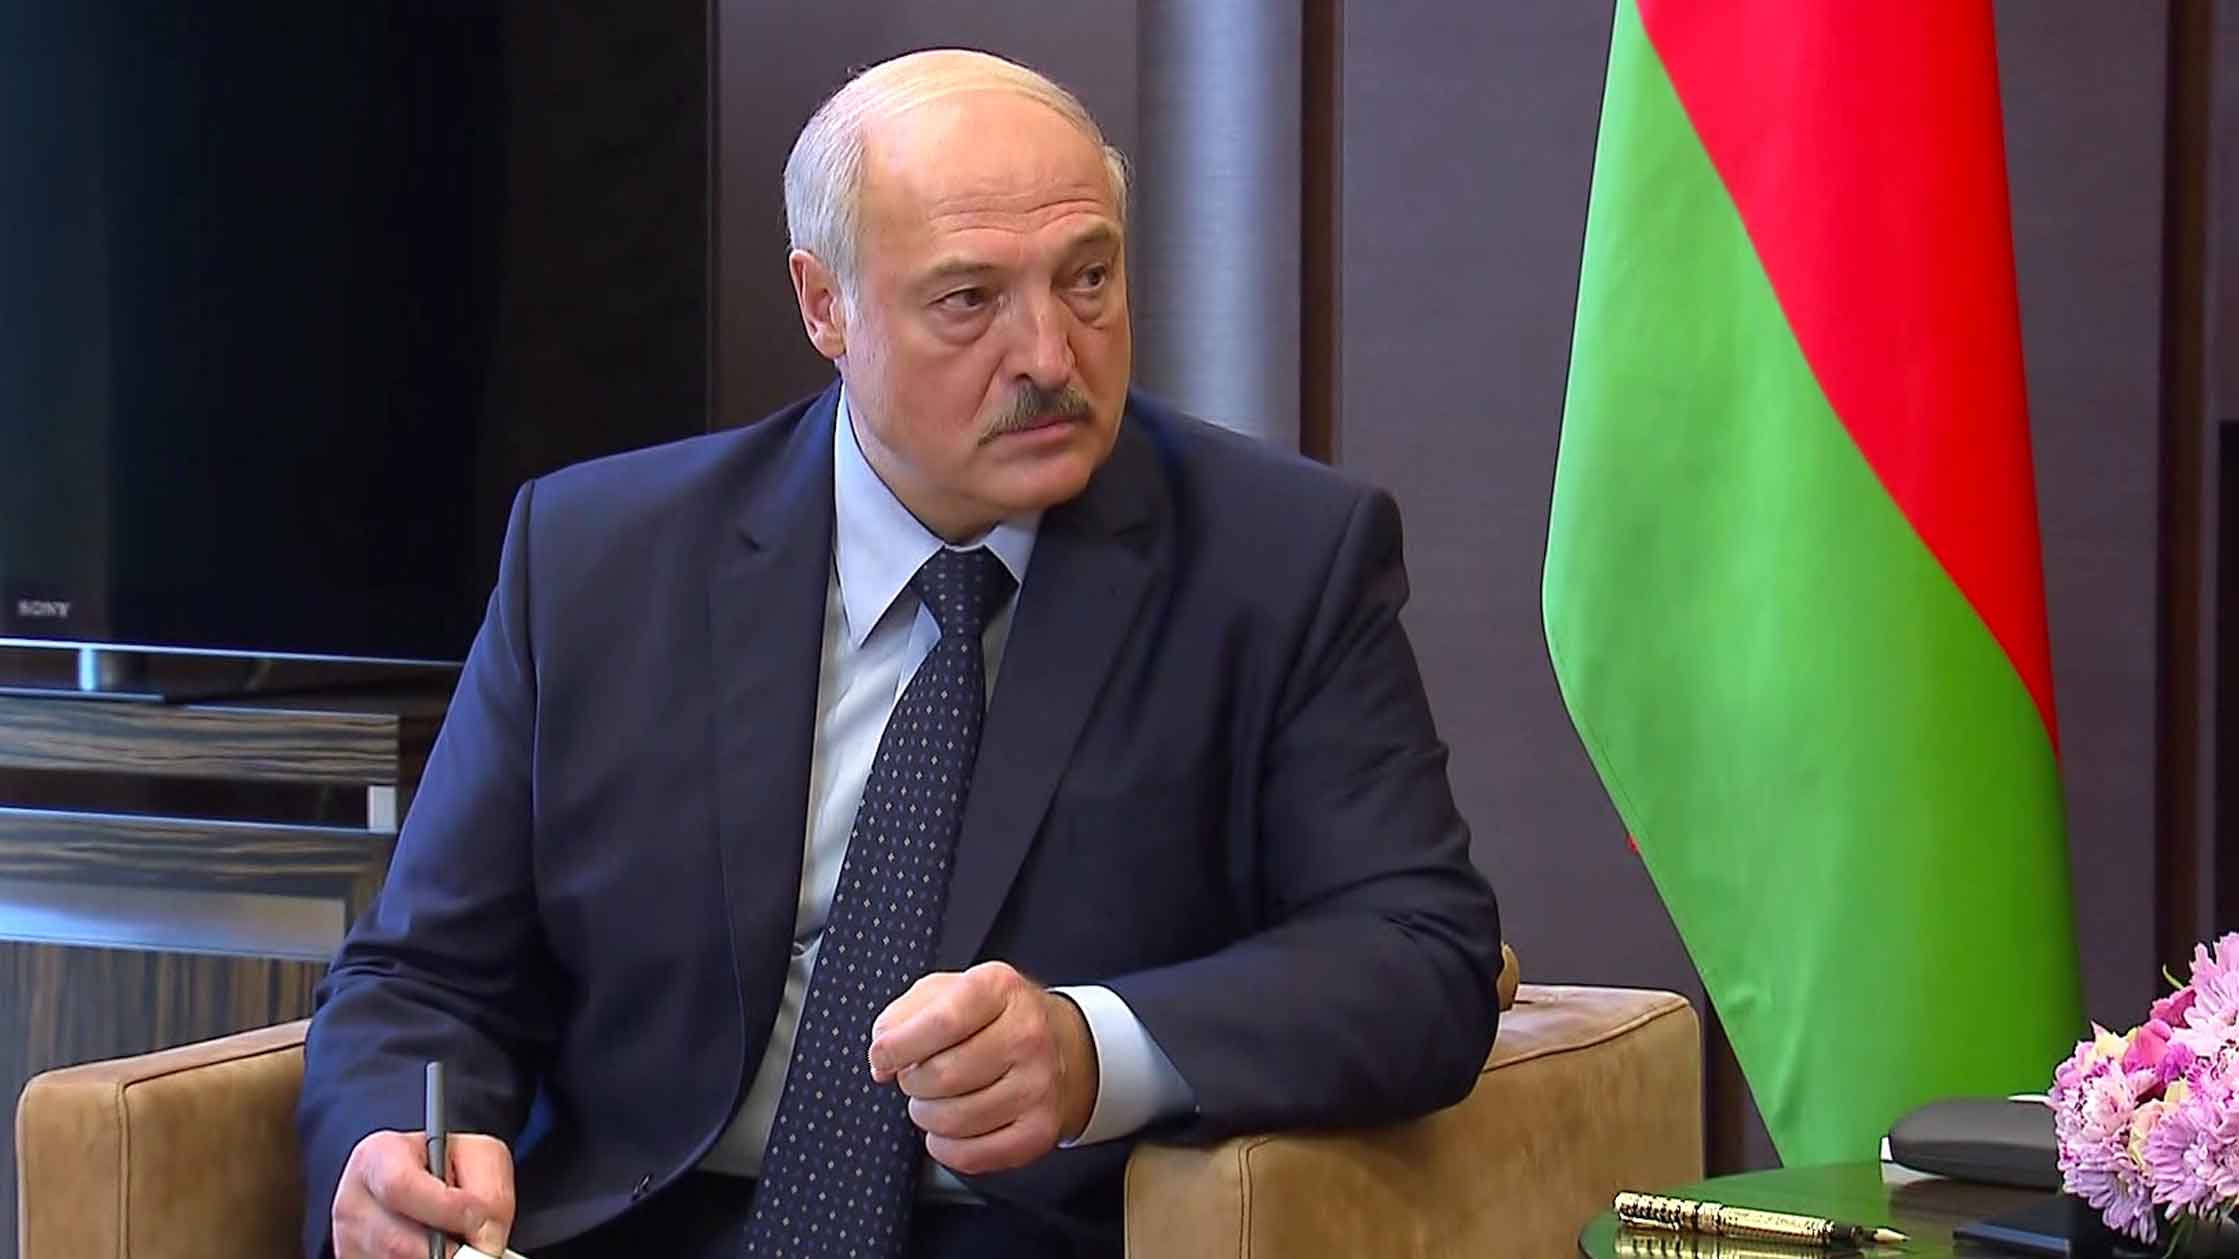 Белорусский лидер призвал желающих взять бразды правления страной соизмерять силы Фото: © GLOBAL LOOK press / Kremlin Pool